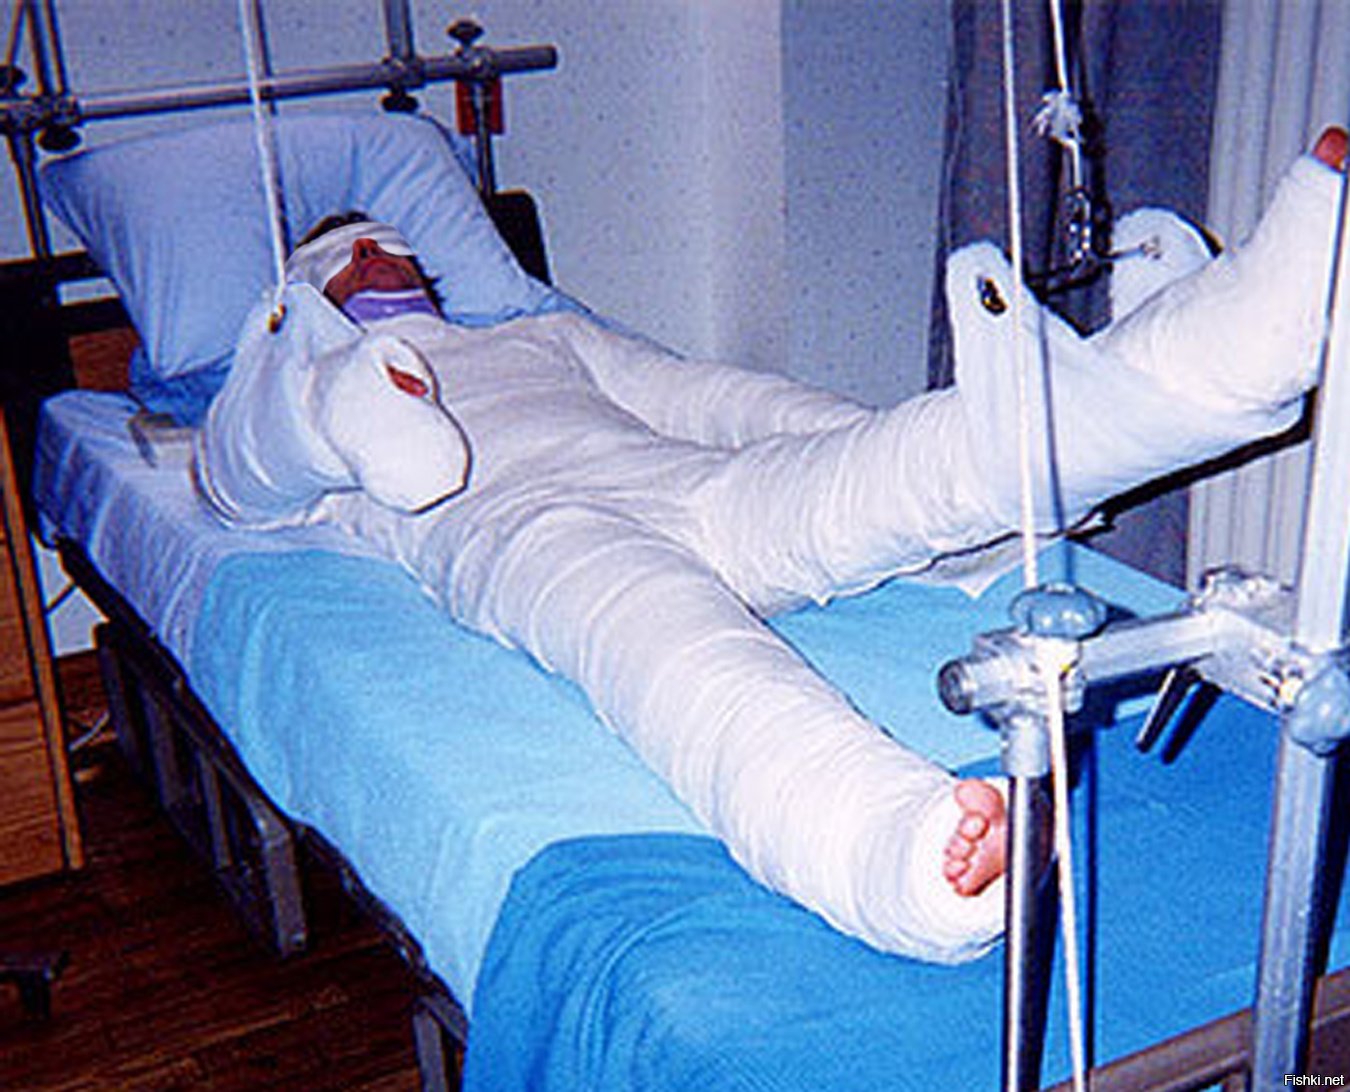 Перемещение пациента из положения лежа на кровати в положение сидя на кровати